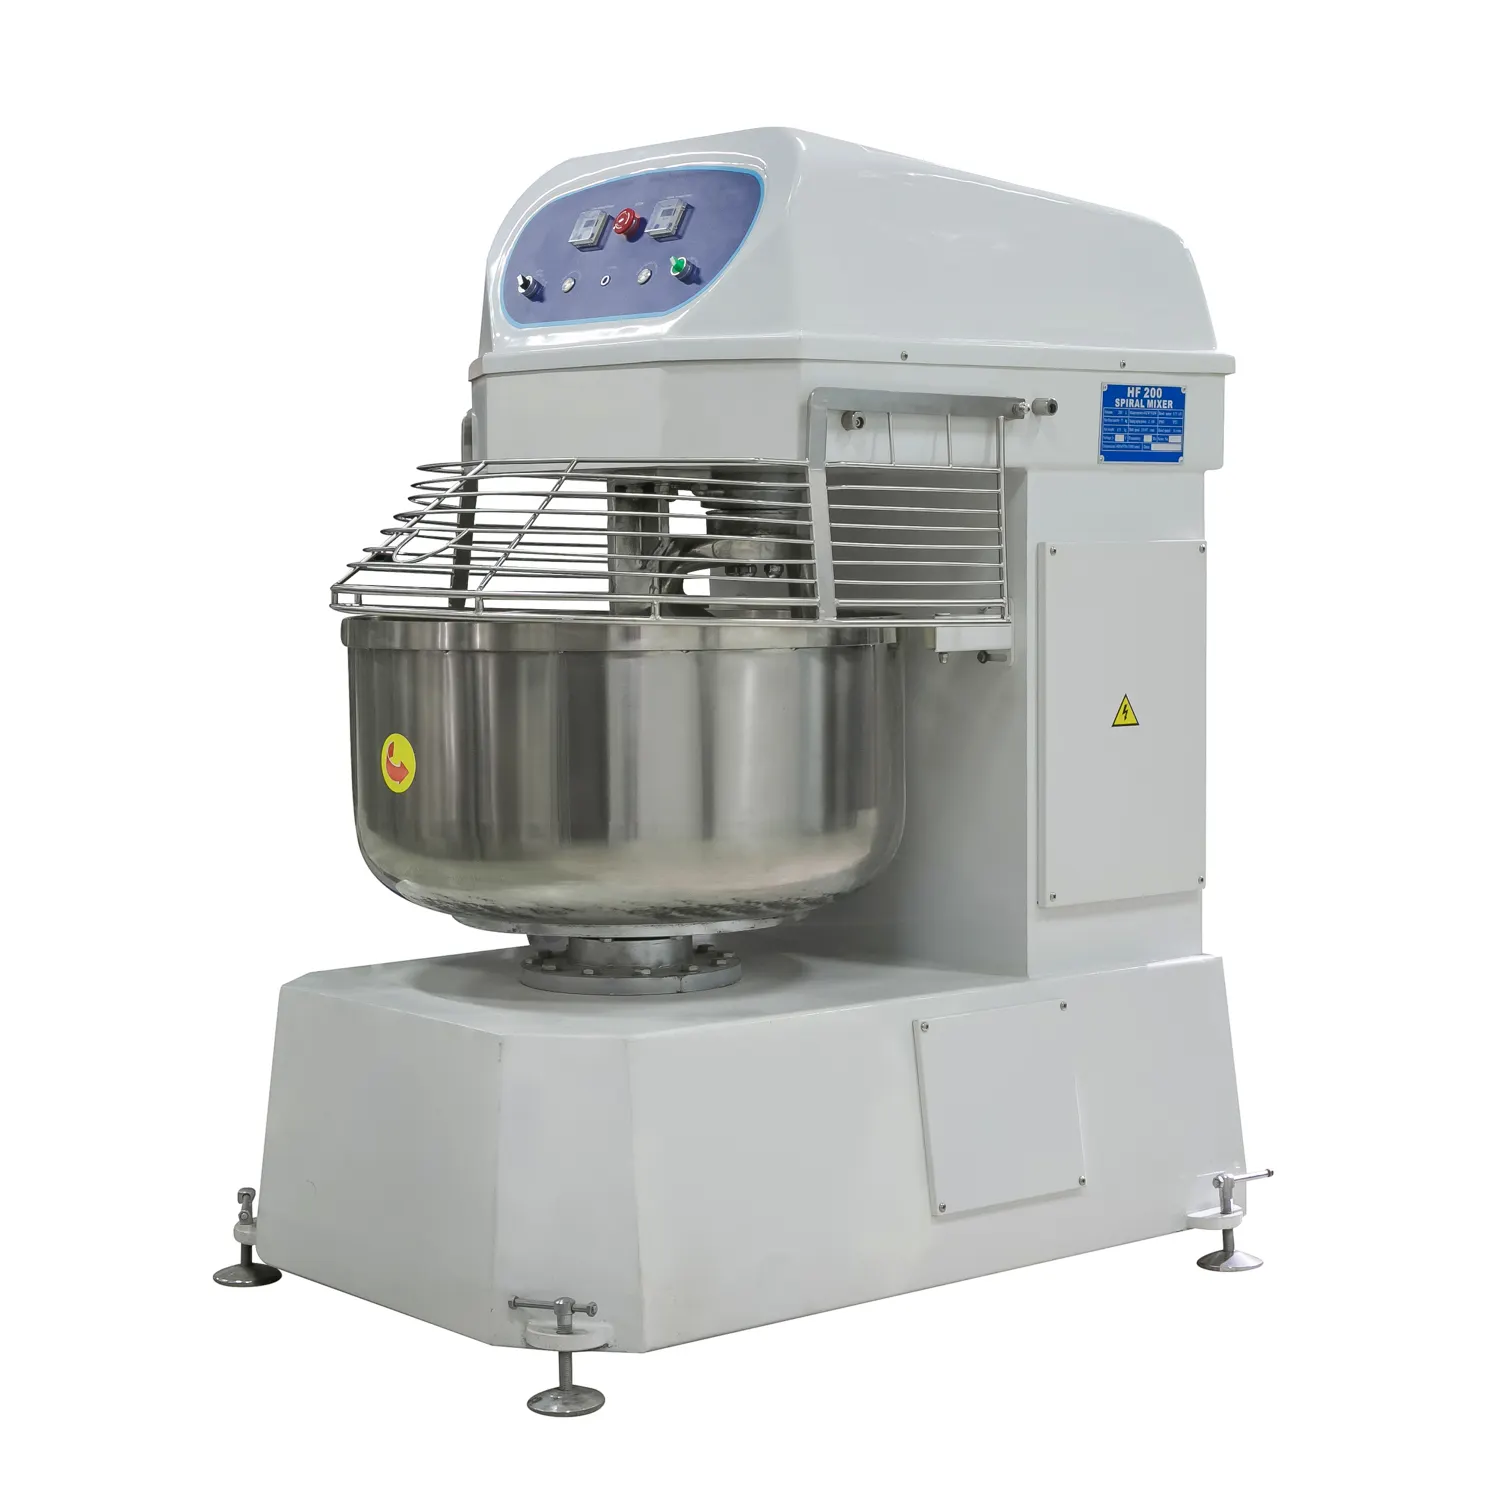 Industrielle kommerzielle Maschine Kuchen Brot Kneter Maschine Planetary Spiral Dough Mixer Hohe Doppel geschwindigkeit zum Teig mischen